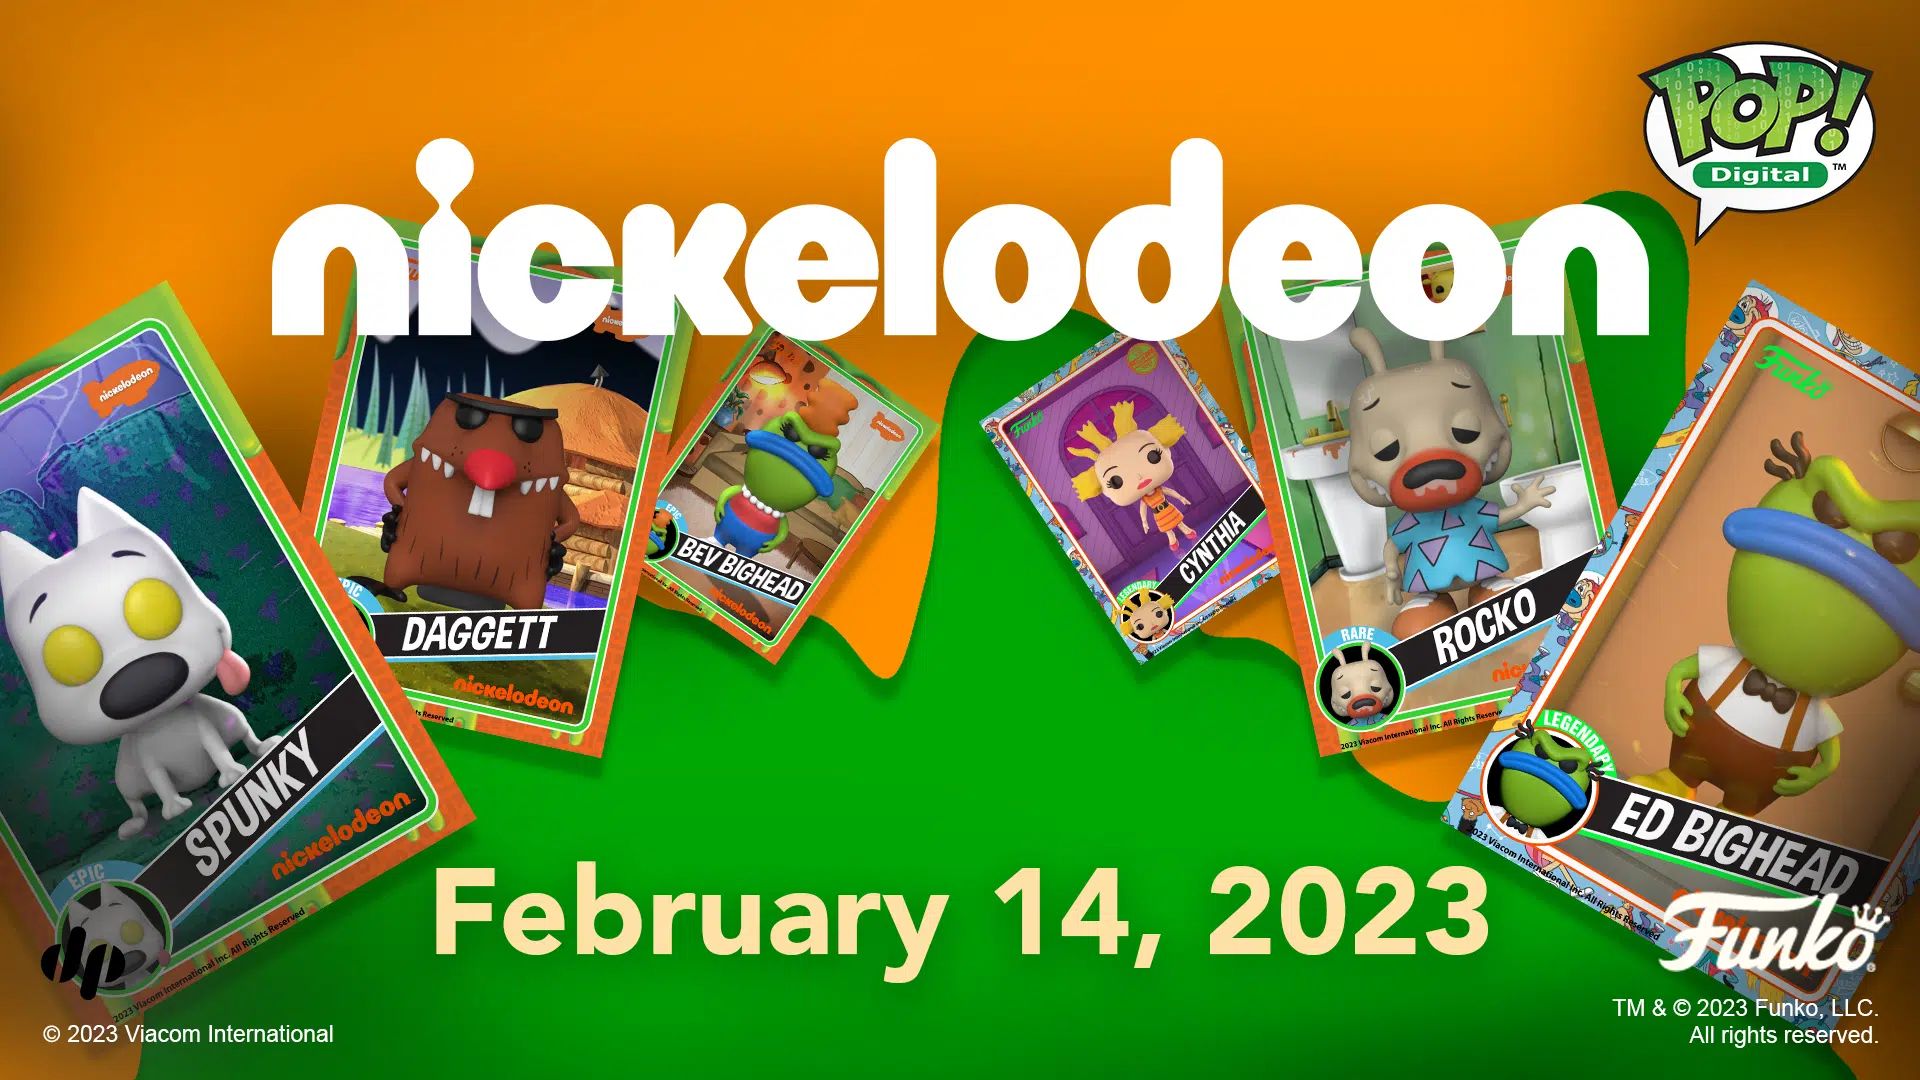 Funko and Paramount нар шинэ Nickelodeon хүүхэлдэйн дижитал поп цуглуулгуудыг танилцуулж байна